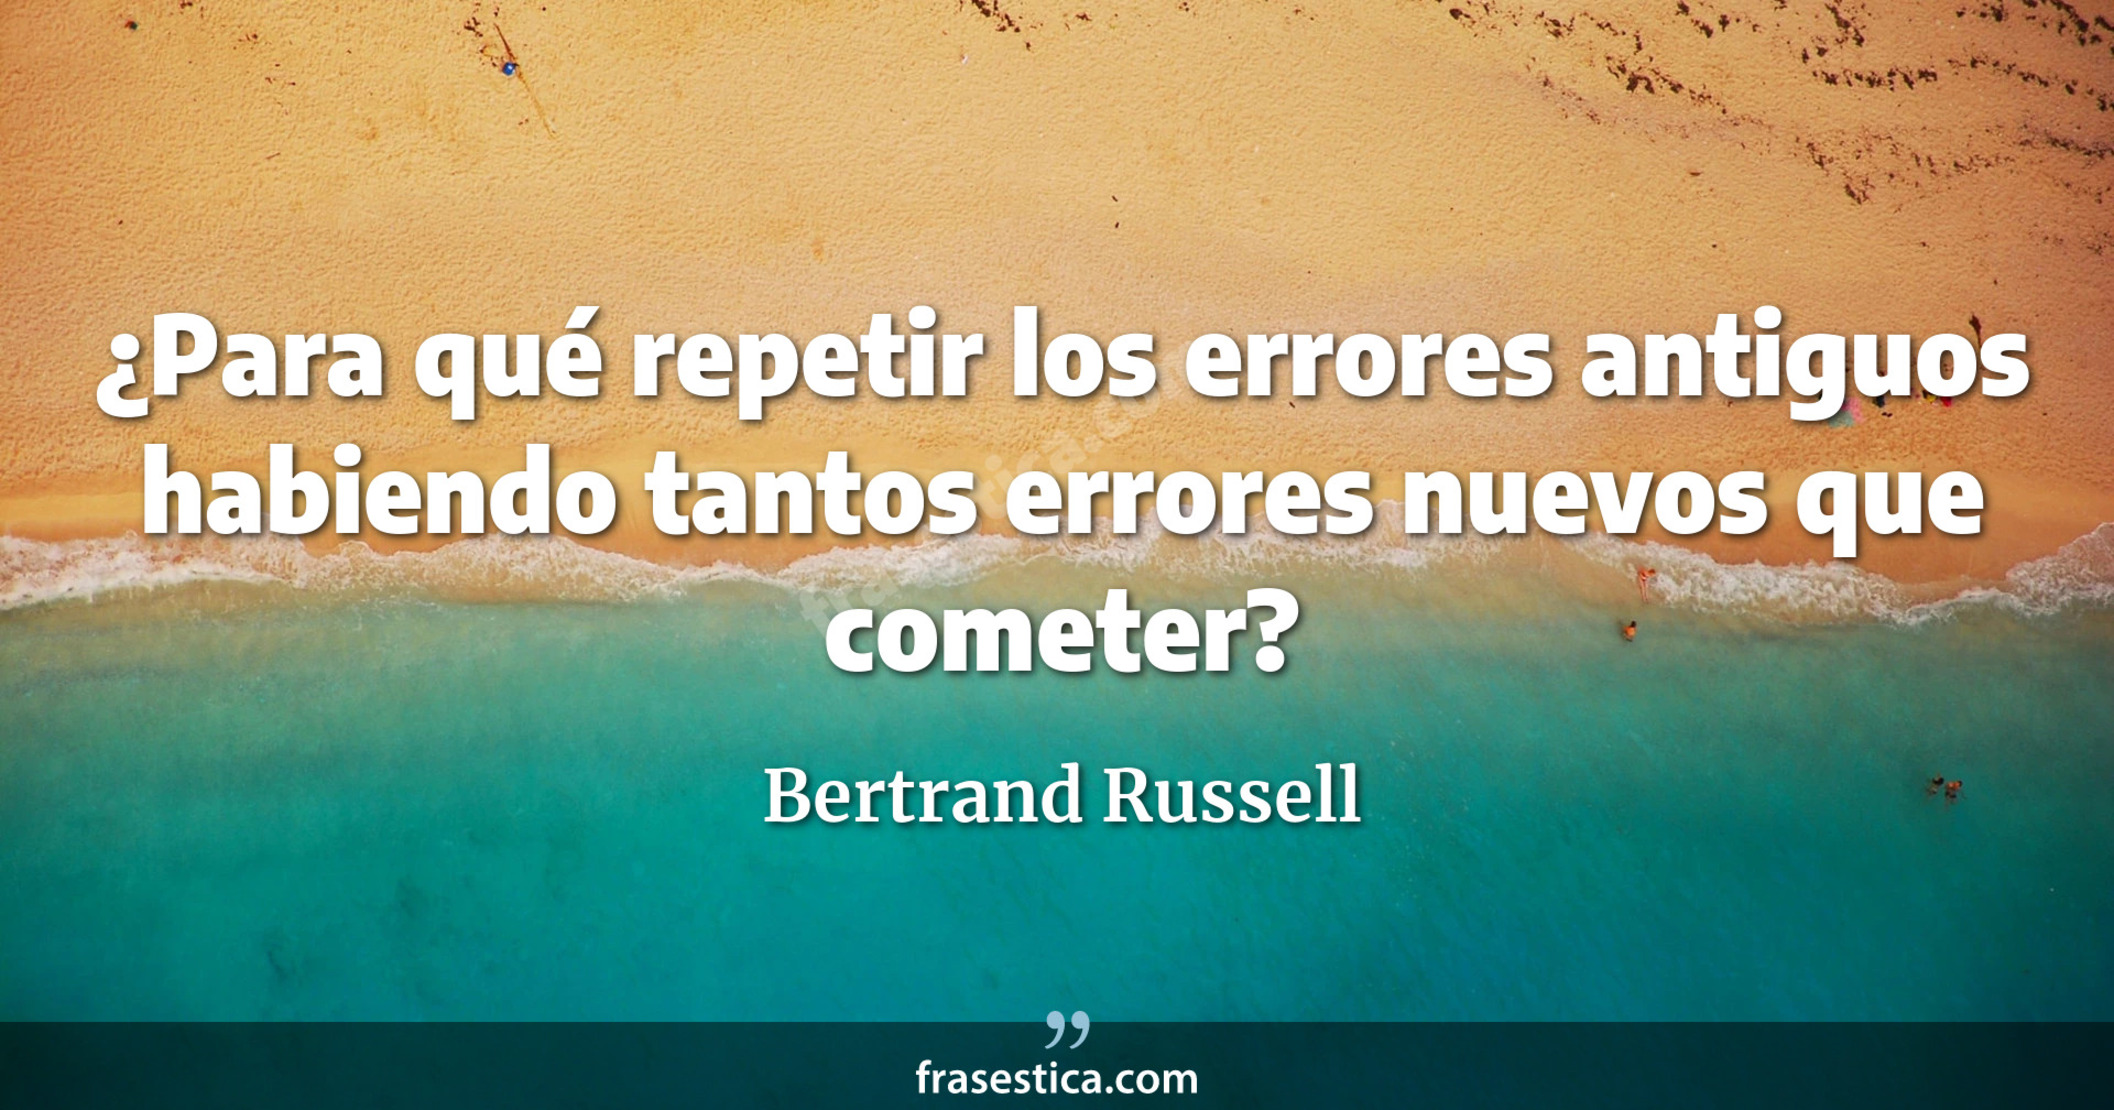 ¿Para qué repetir los errores antiguos habiendo tantos errores nuevos que cometer? - Bertrand Russell